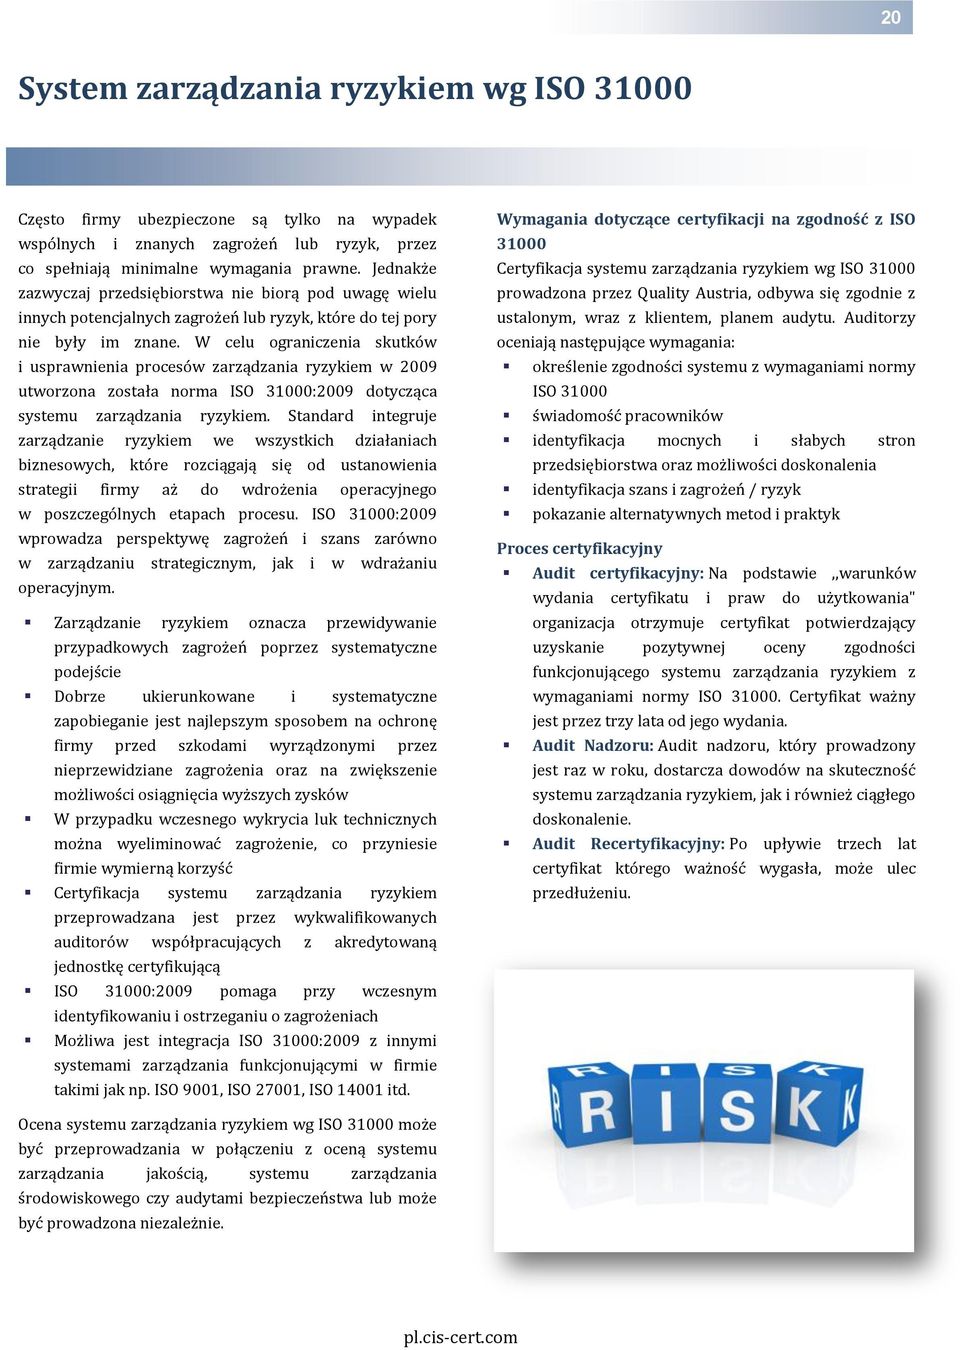 W celu ograniczenia skutków i usprawnienia procesów zarządzania ryzykiem w 2009 utworzona została norma ISO 31000:2009 dotycząca systemu zarządzania ryzykiem.